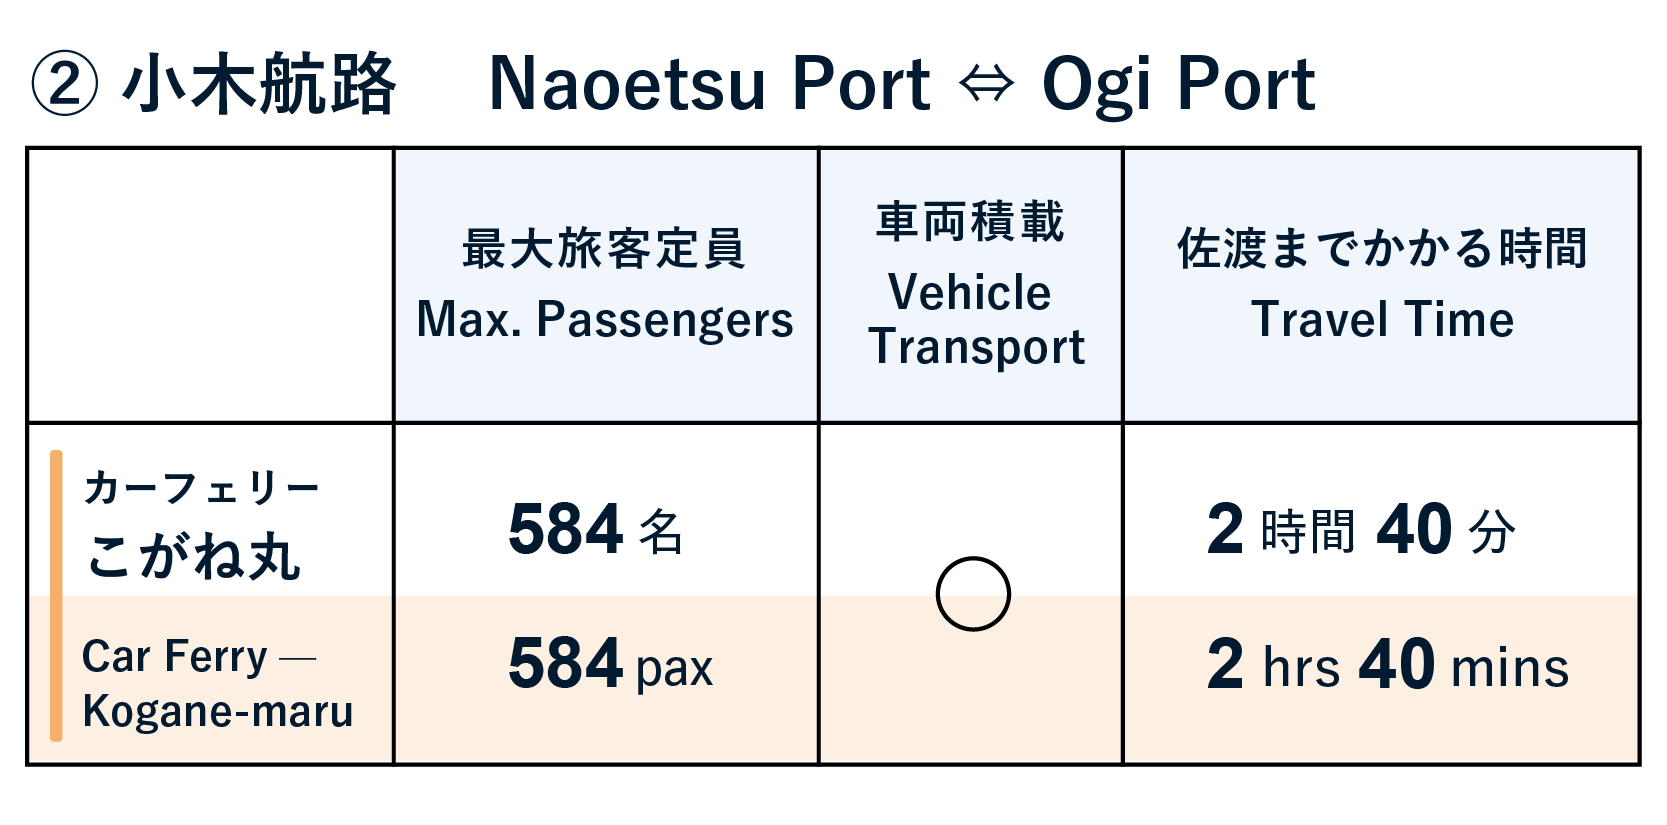 Travel to Sado (Naoetsu Port to Ogi Port)